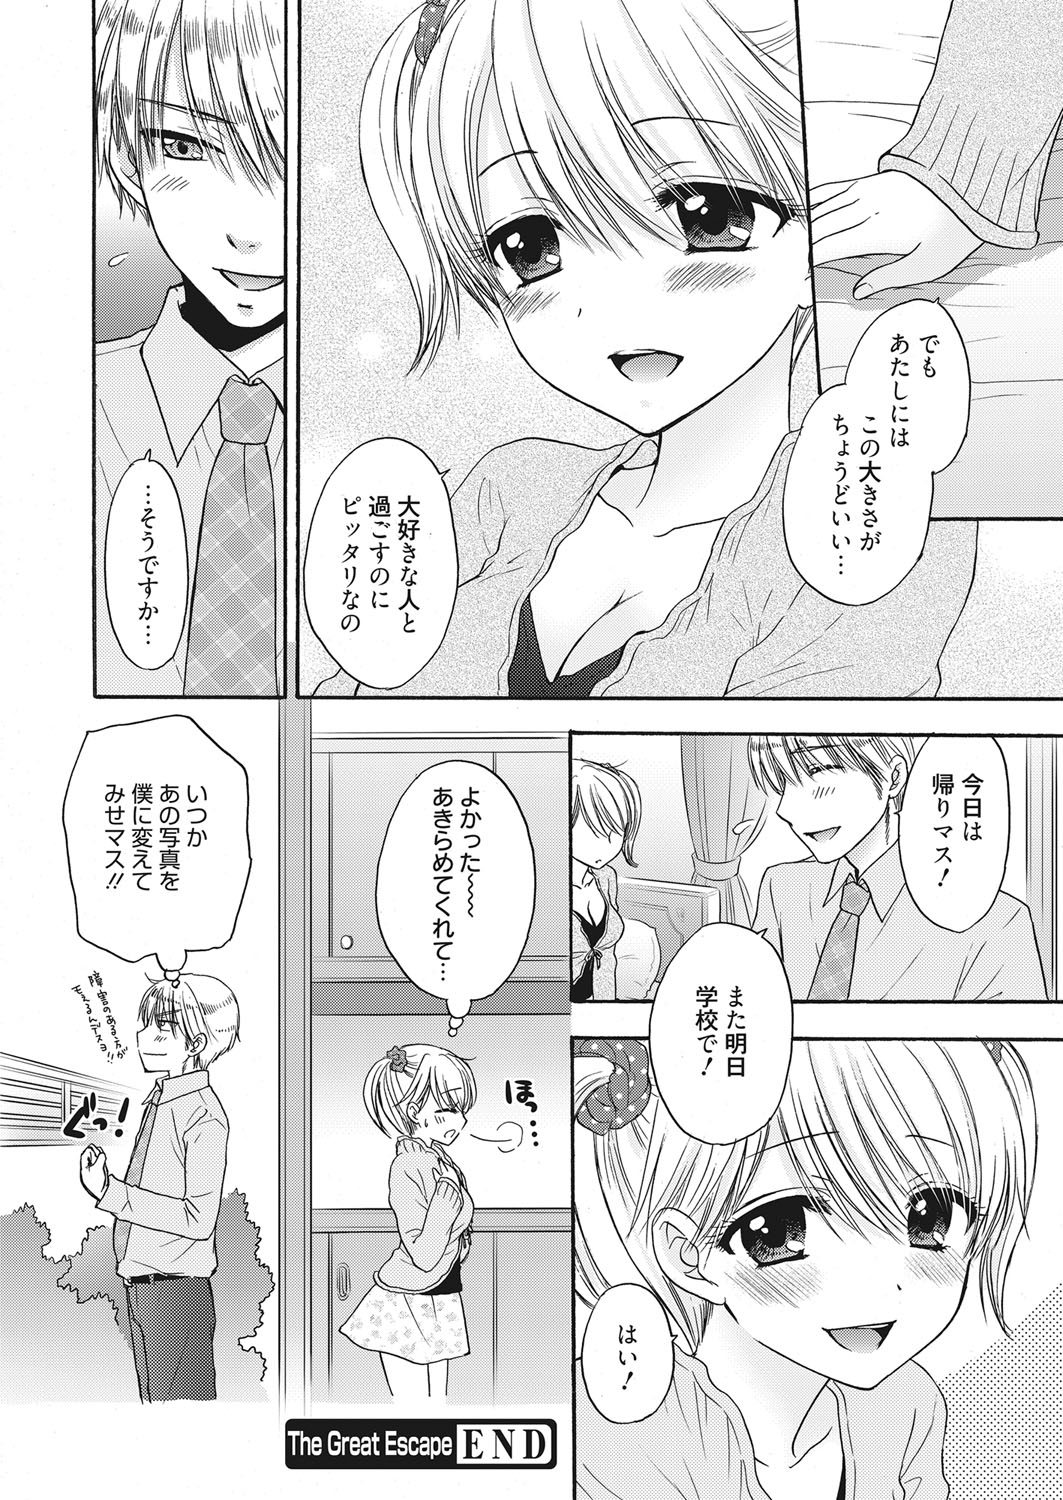 Web Manga Bangaichi Vol. 7 web 漫画ばんがいち Vol.7